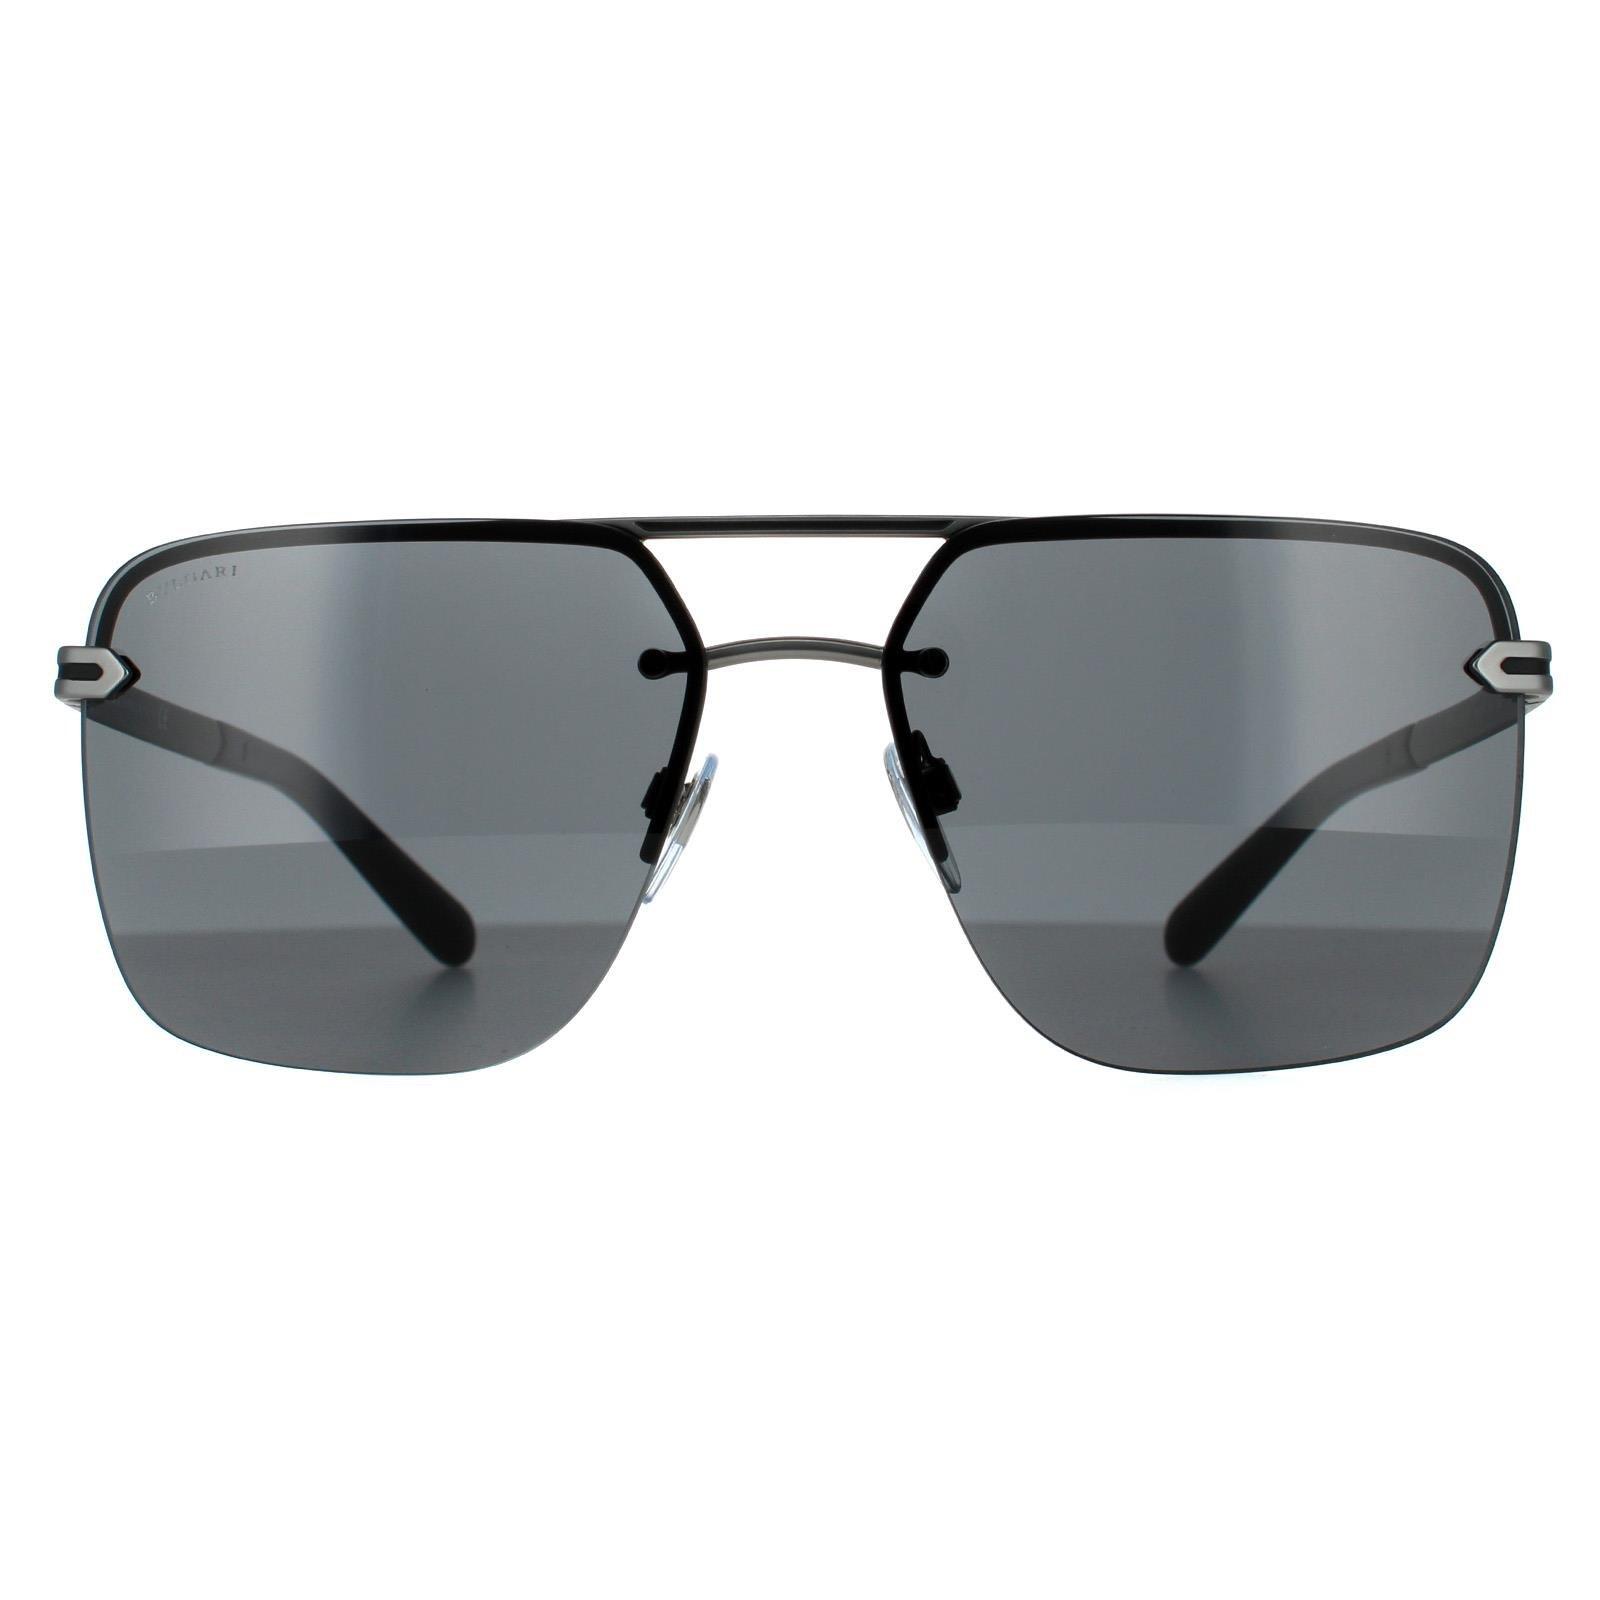 Прямоугольные матовые серые солнцезащитные очки цвета бронзы Bvlgari, серый